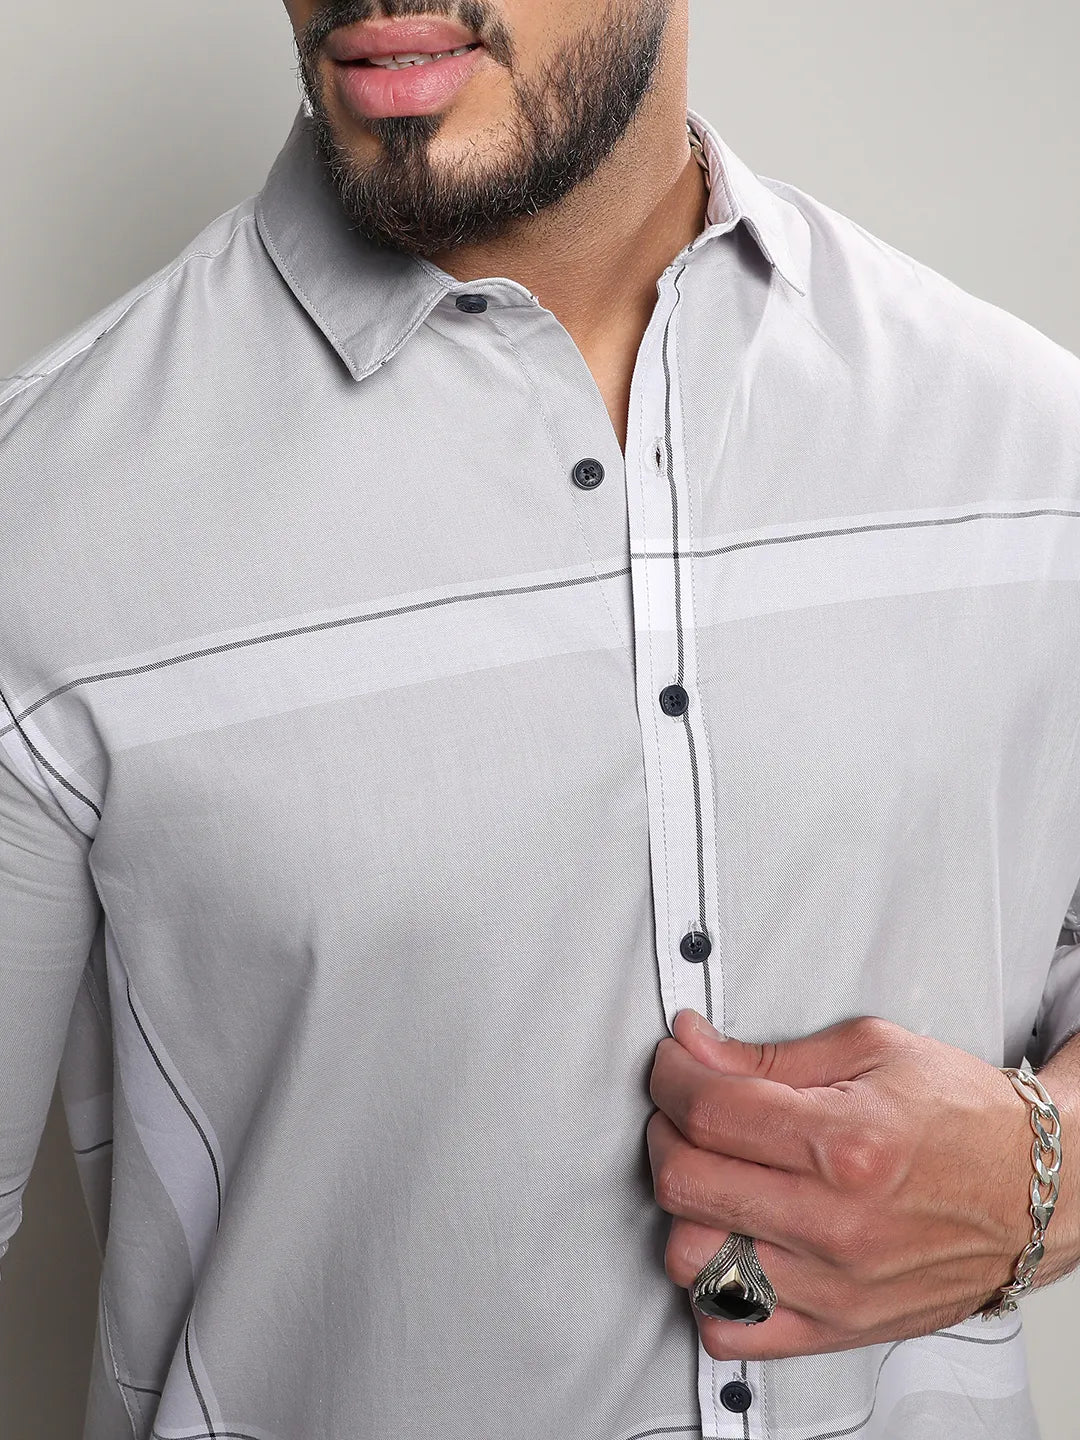 Tartan Plaid Button Up Shirt